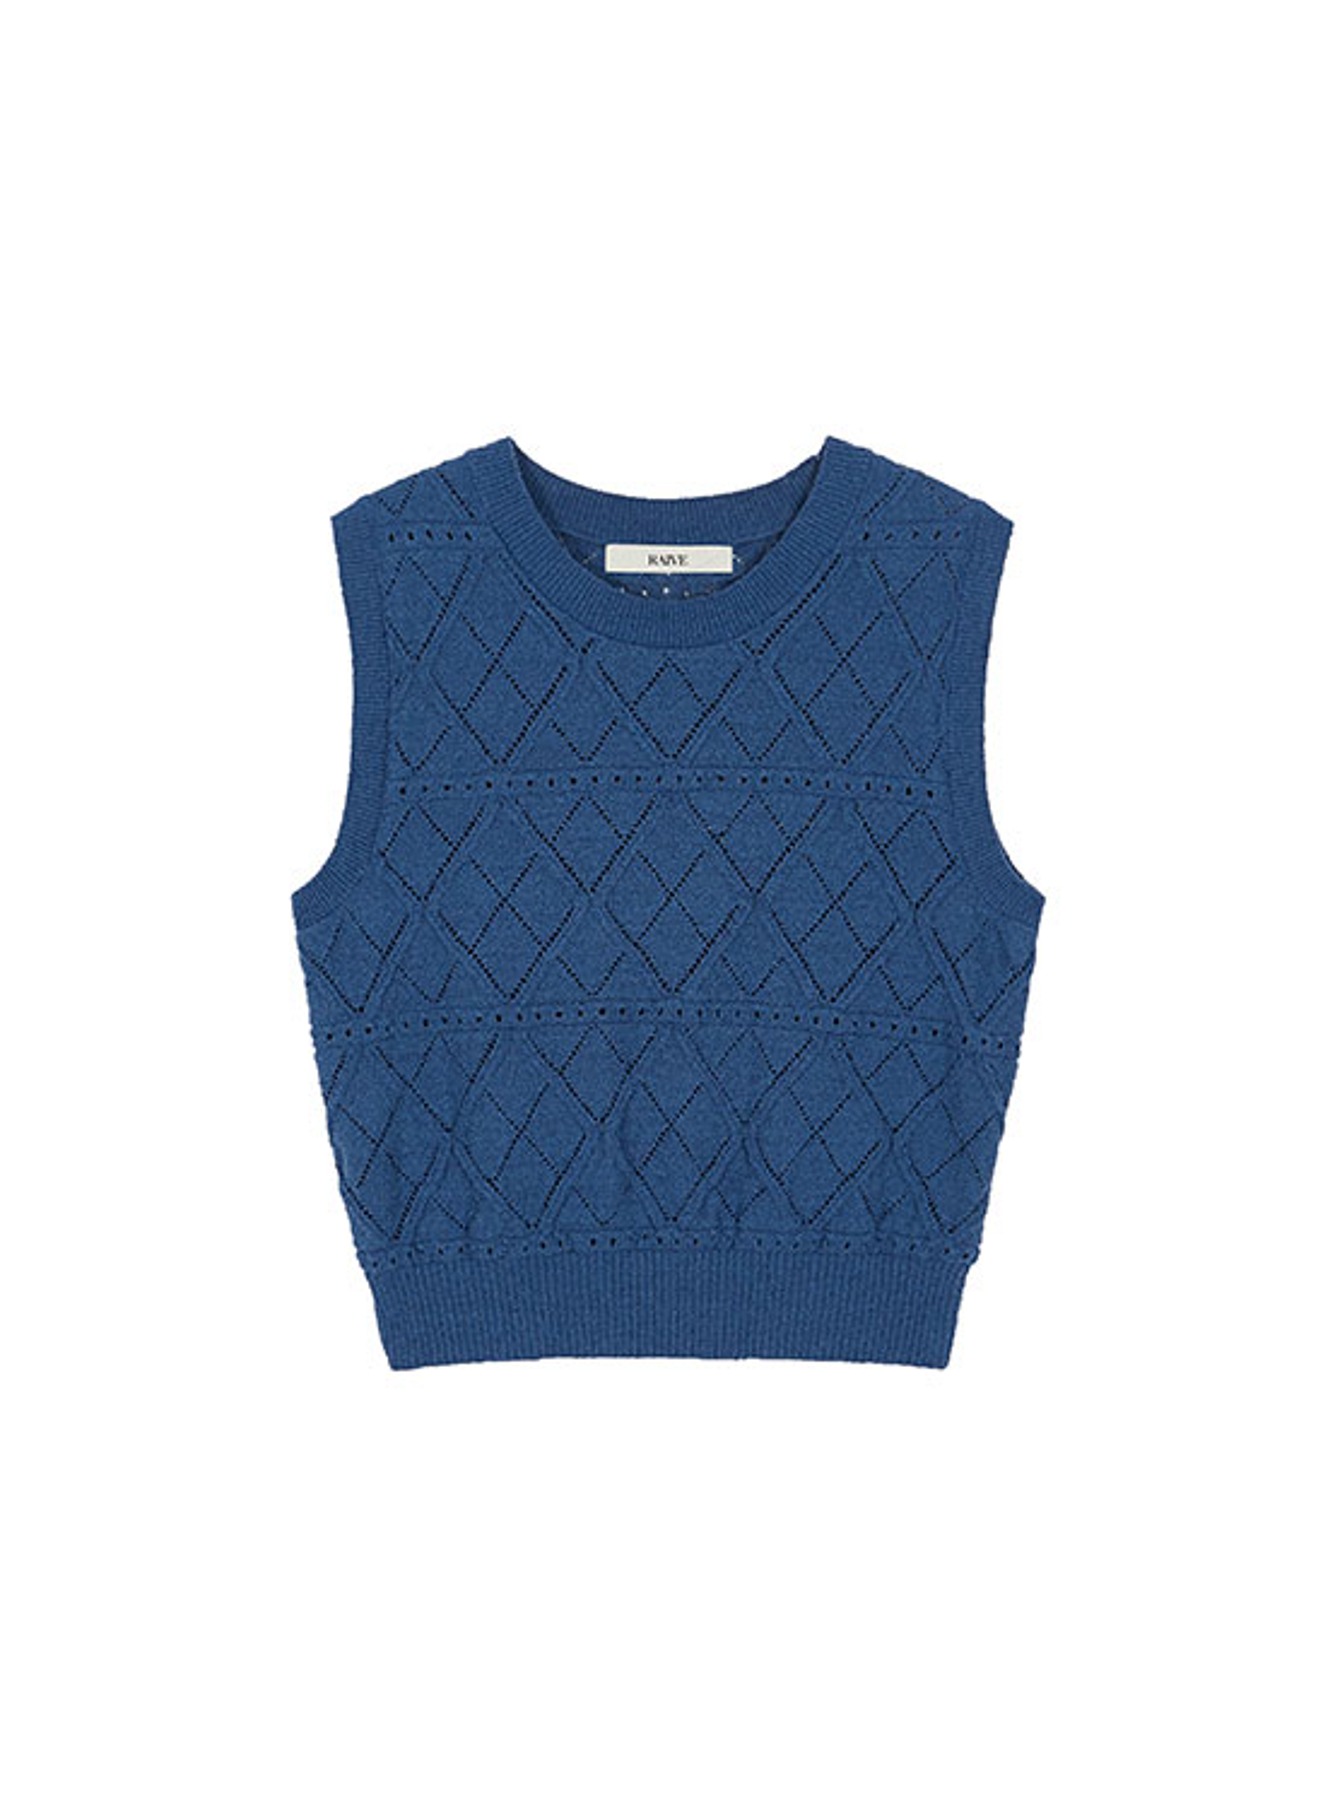 Cropped Knit Vest in Blue VK3MV150-22